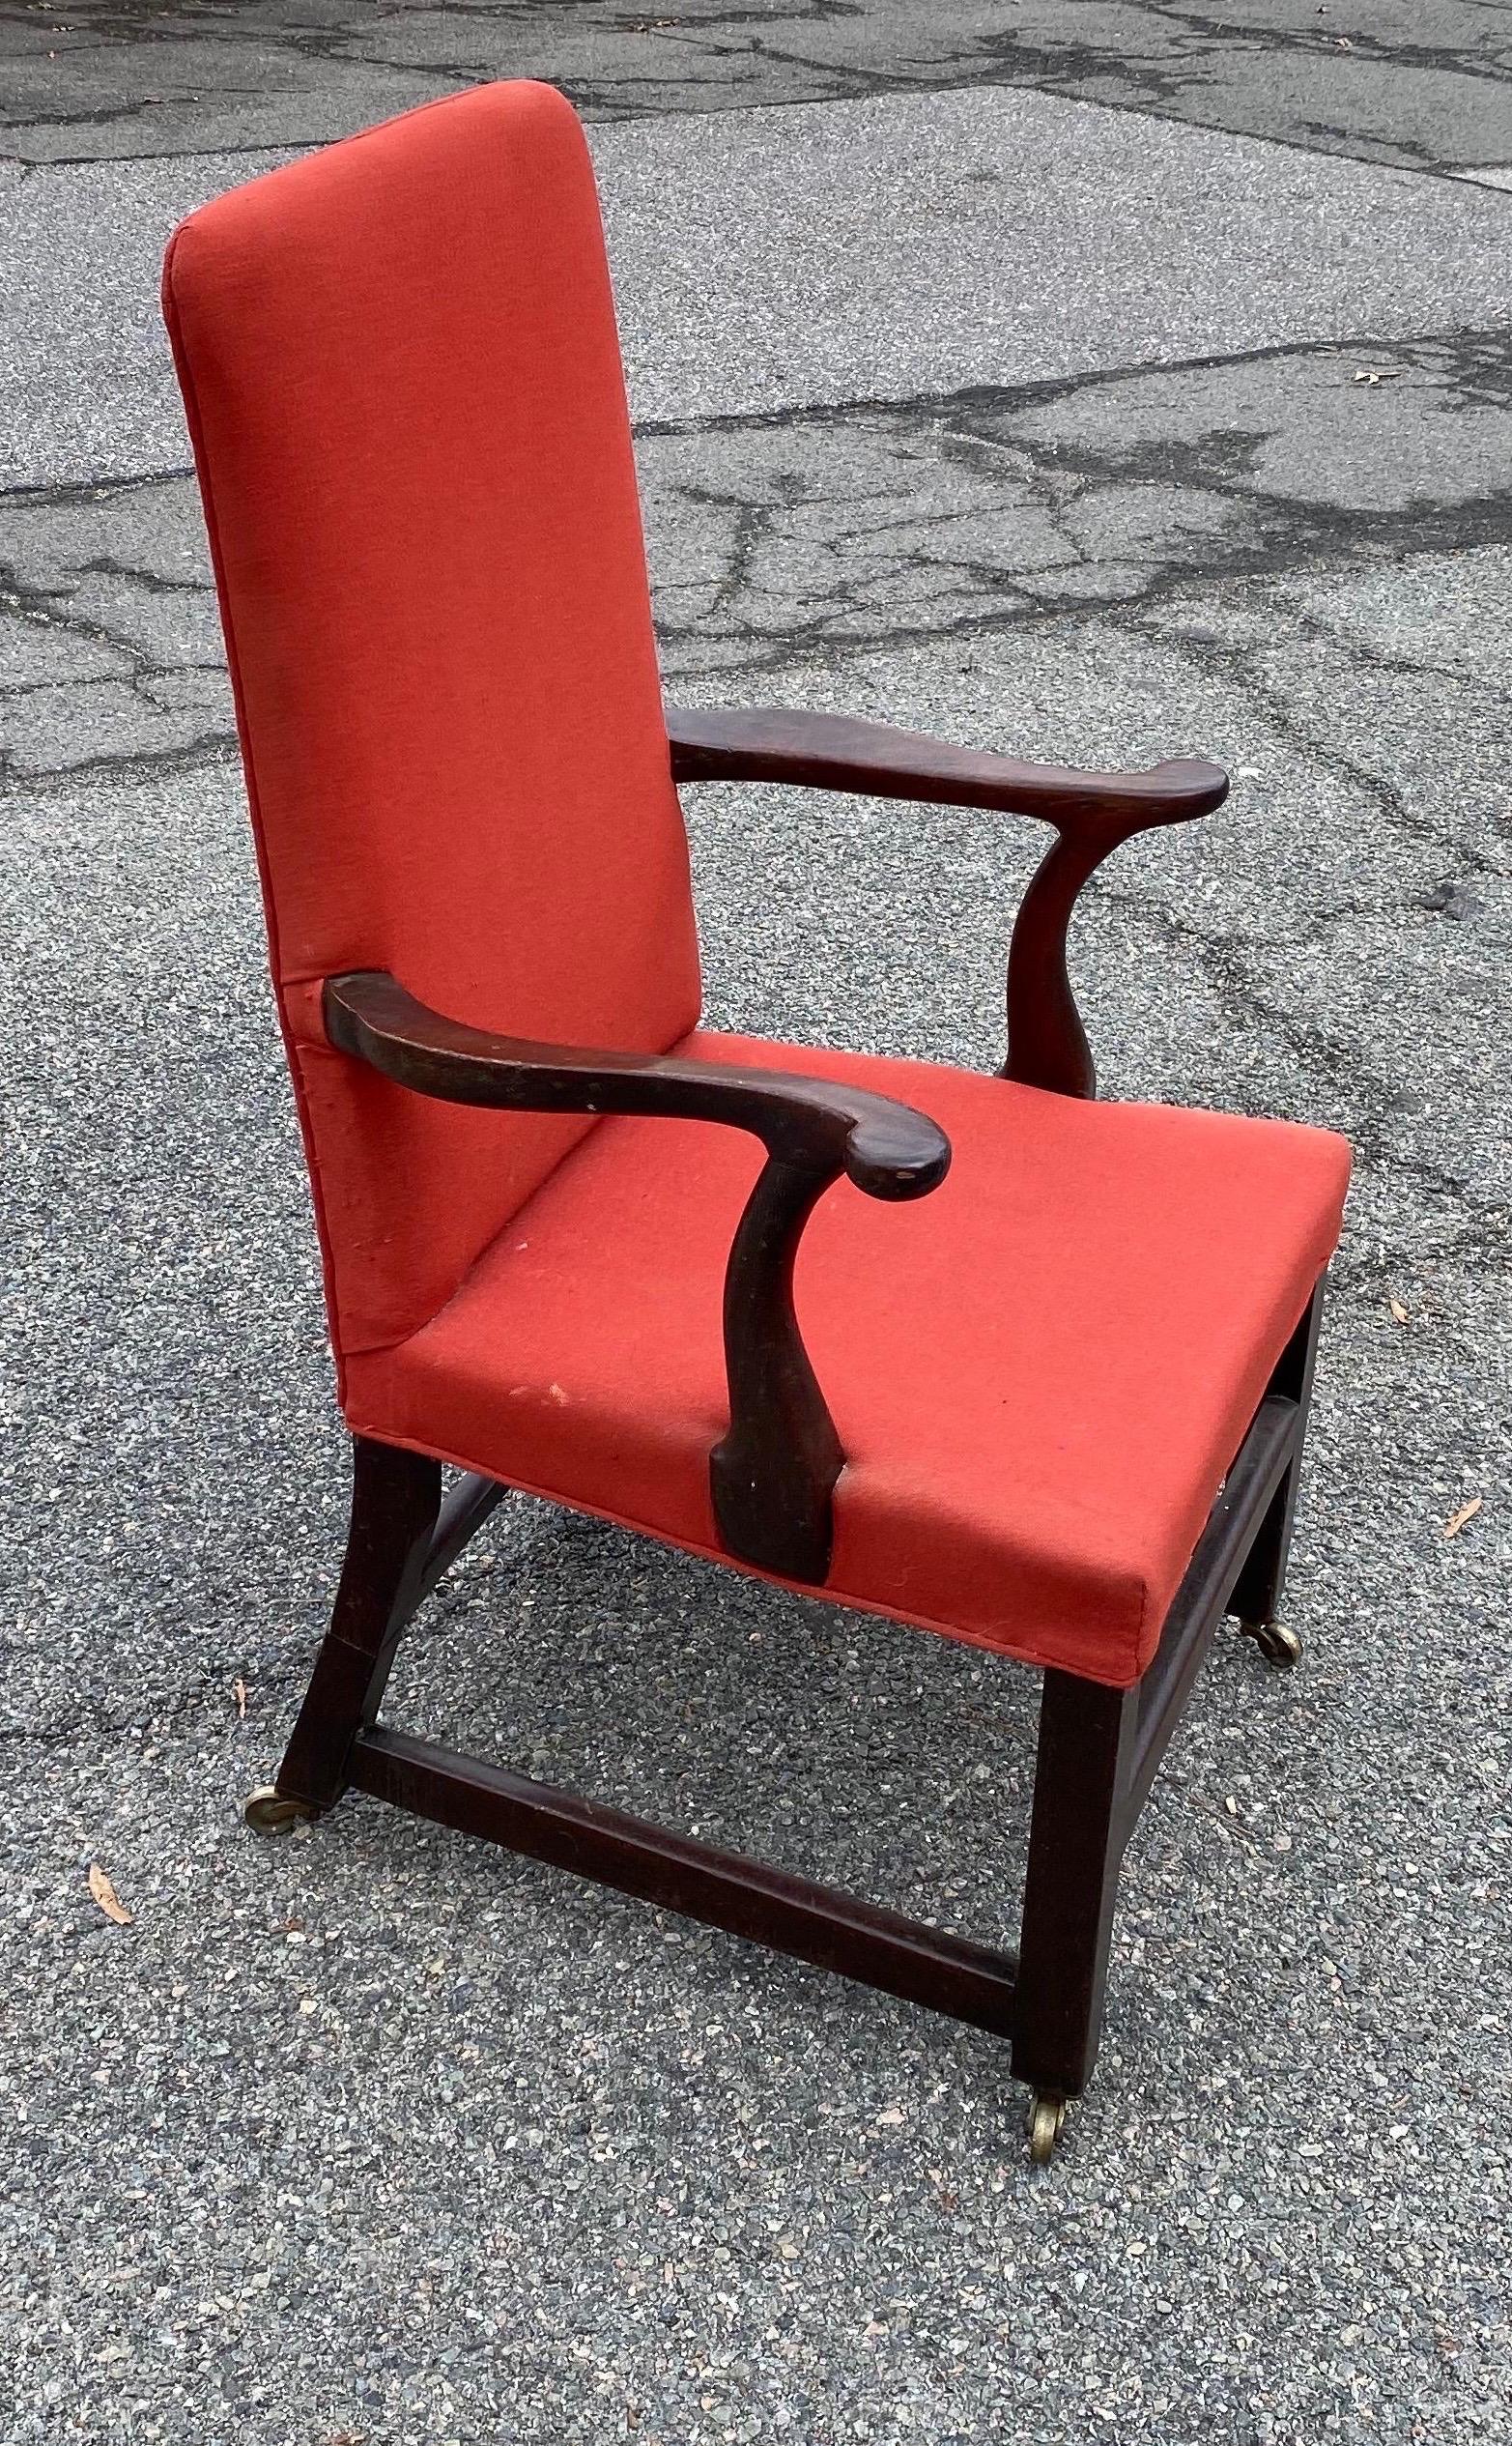 Schöner englischer Mahagoni-Sessel aus dem 19. Jahrhundert mit roter Polsterung und Rollen. Der Stuhl hat charmante alte Restaurierungen an den Hinterbeinen, die wie Manschetten wirken.